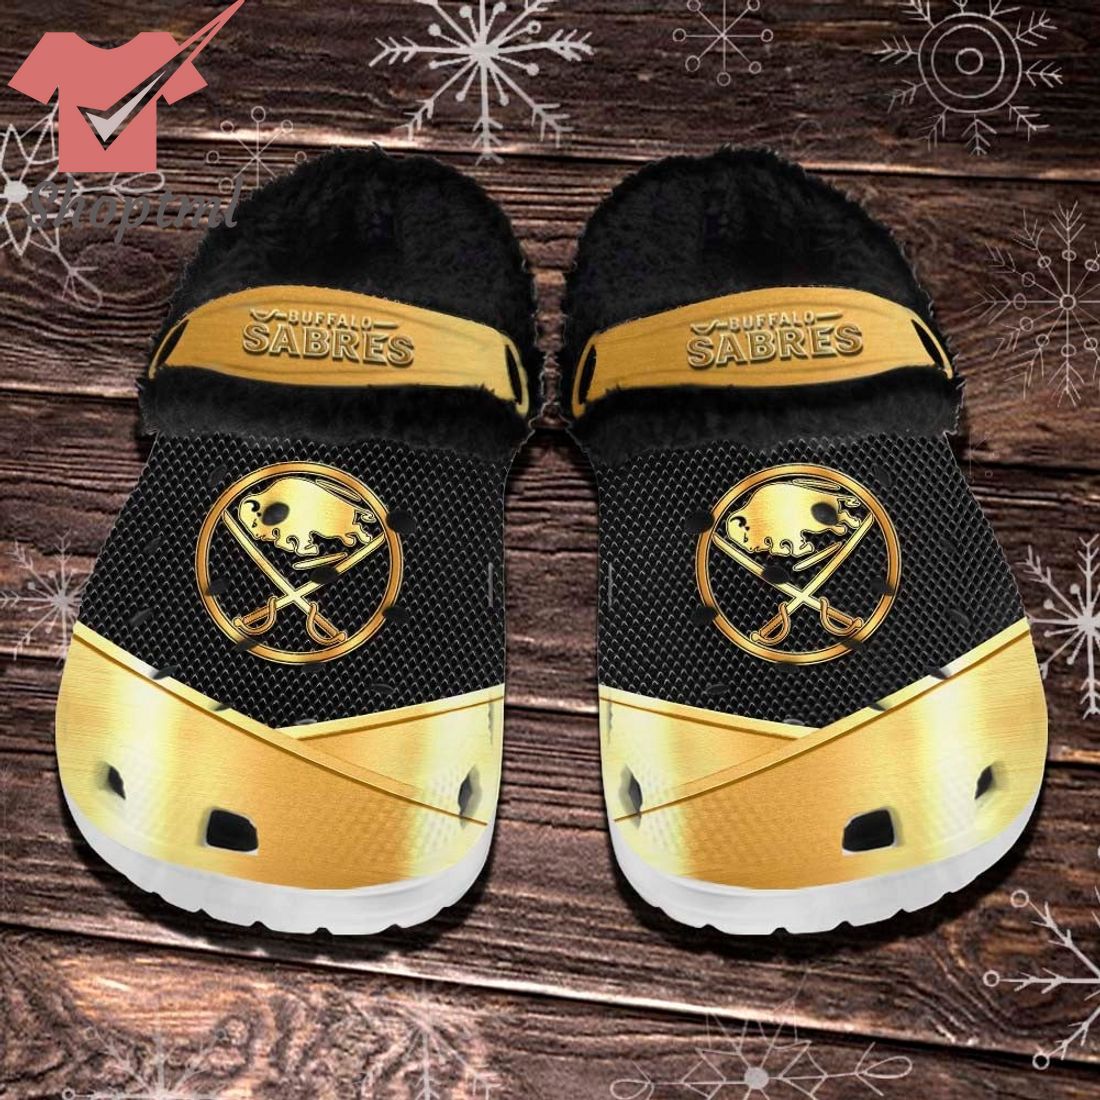 Buffalo Sabres NHL Fleece Crocs Clogs Shoes